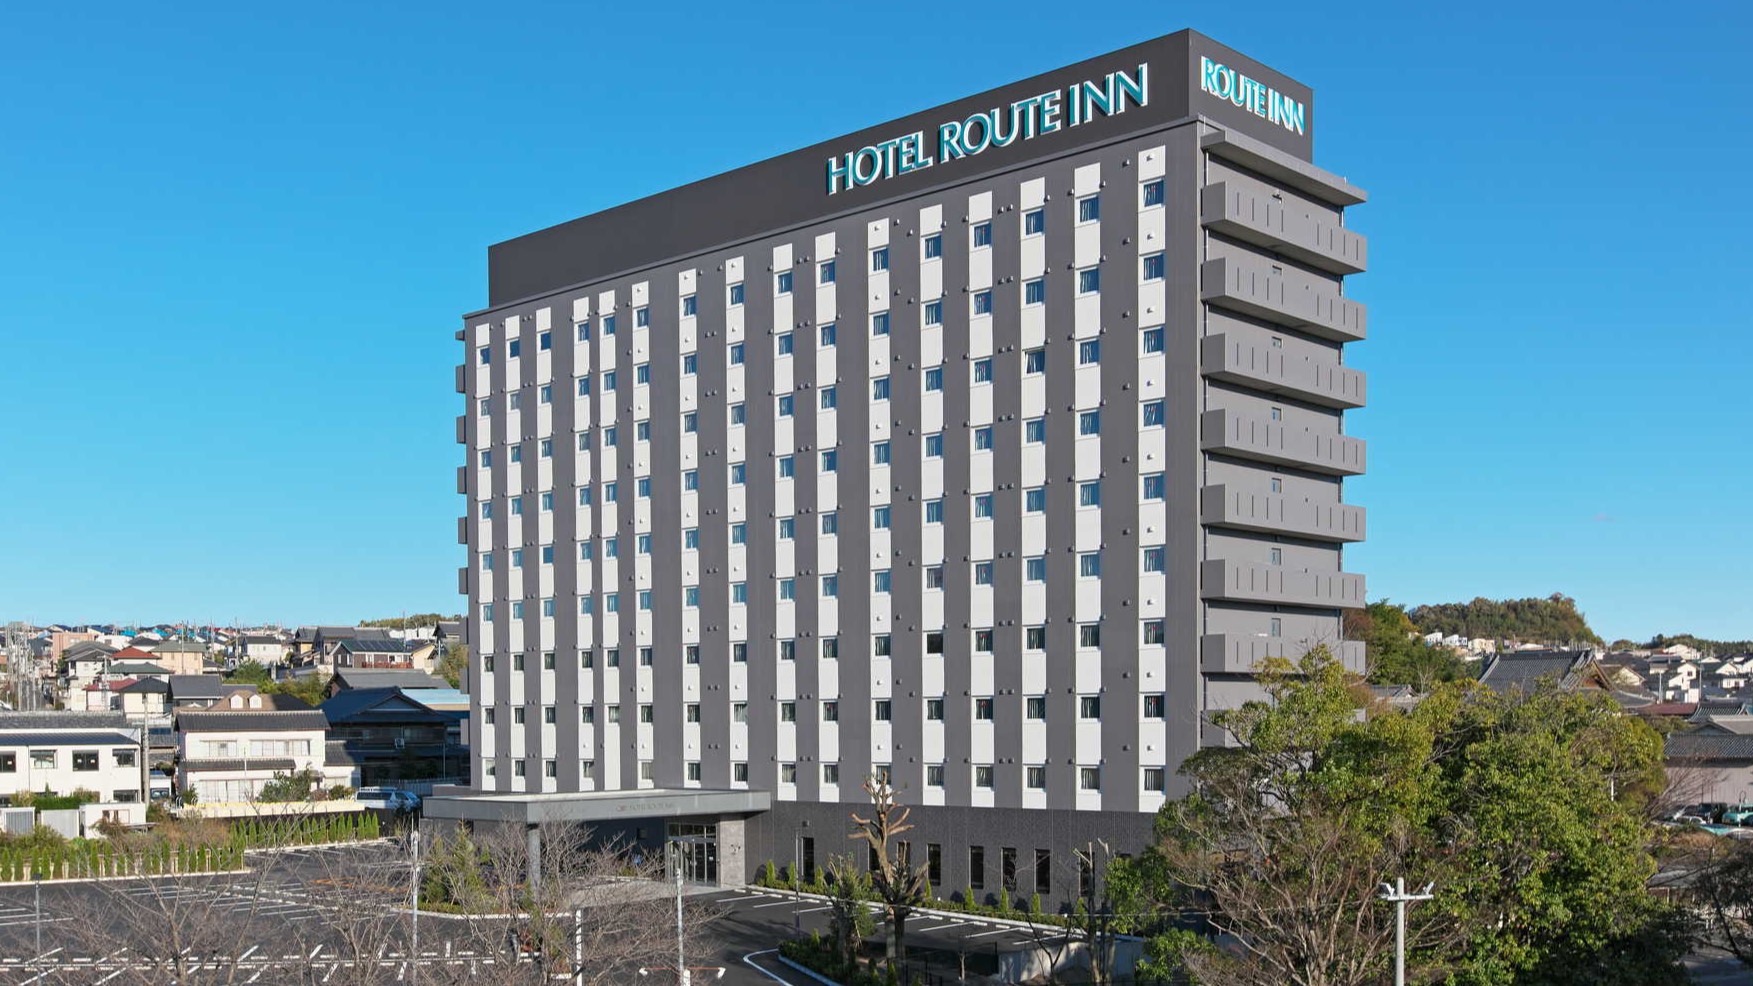 桑名 Route-Inn 飯店